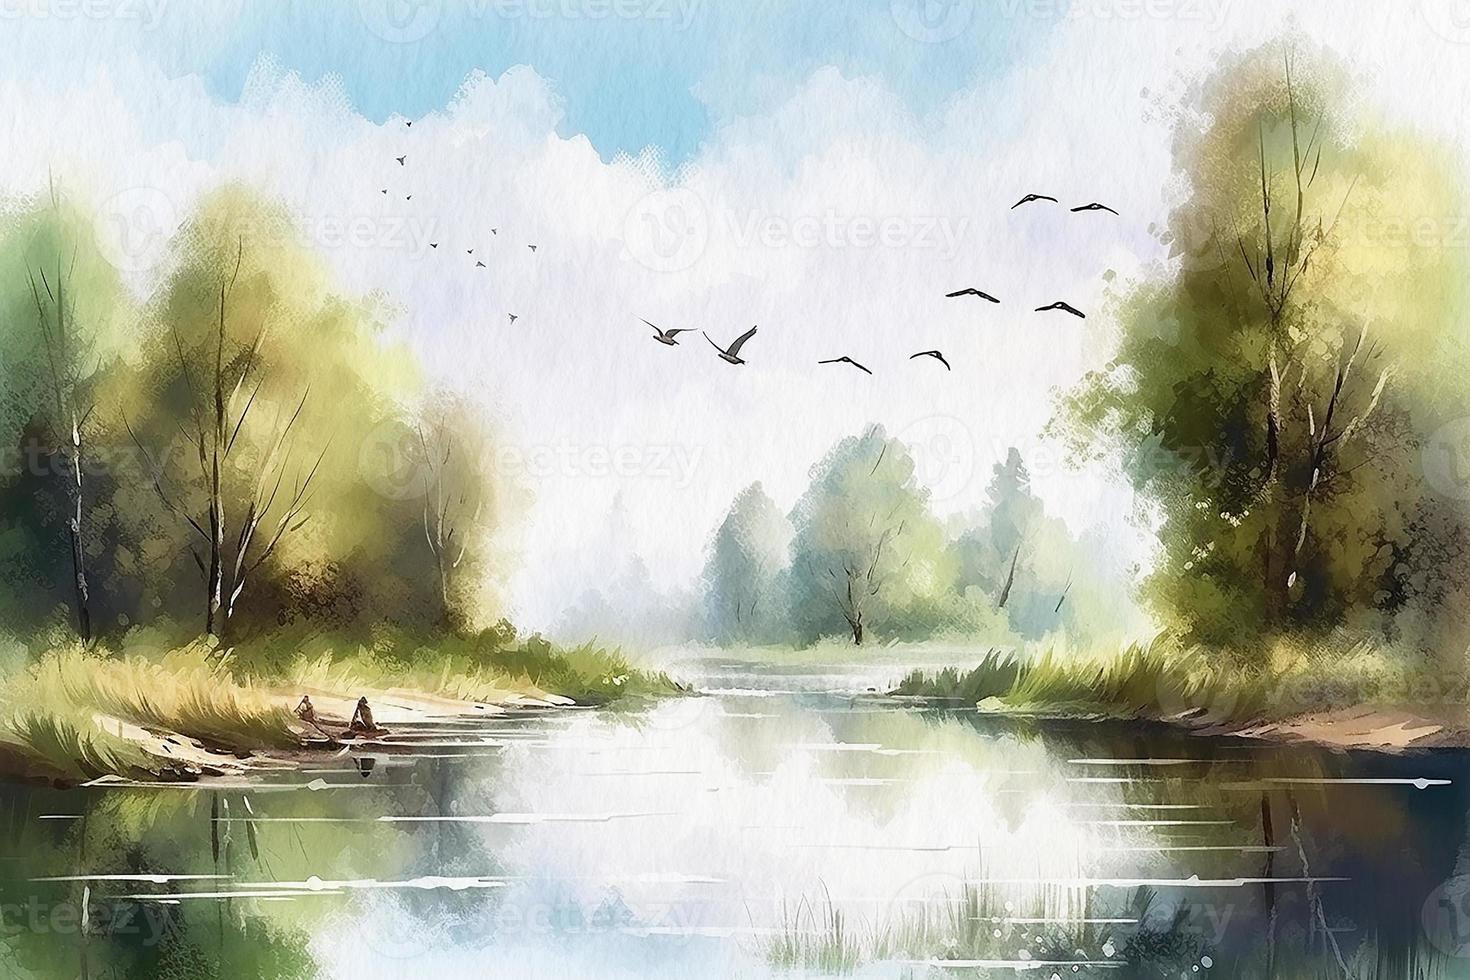 landskap skog och skog sjö med flygande fåglar, vattenfärg målning på texturerad papper. digital vattenfärg målning foto